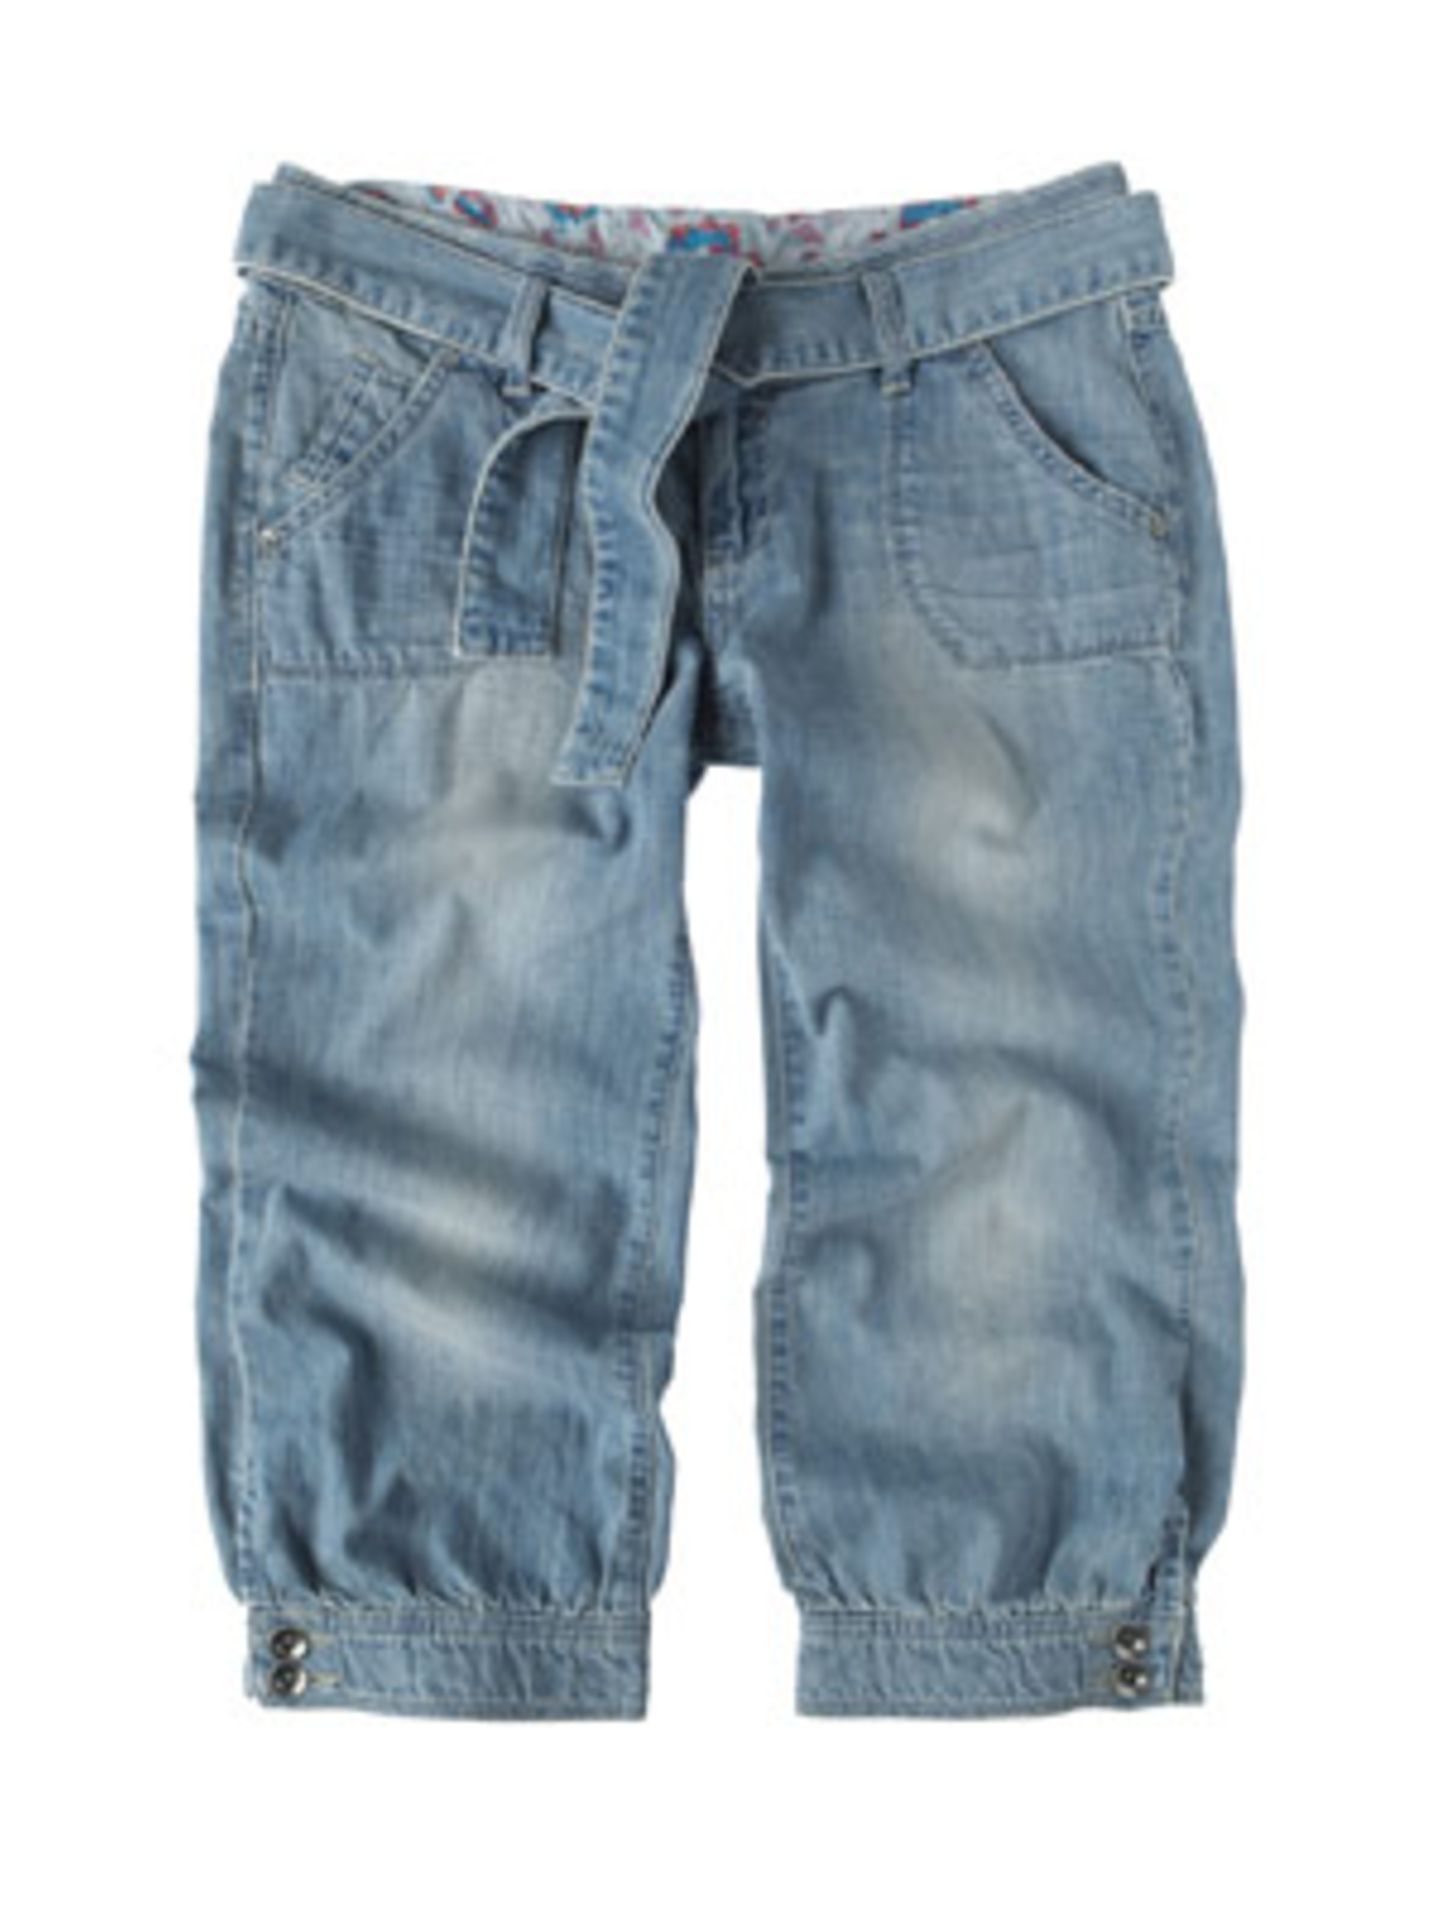 Knielange Jeans in heller Waschung mit Gürtel von Esprit, um 70 Euro.